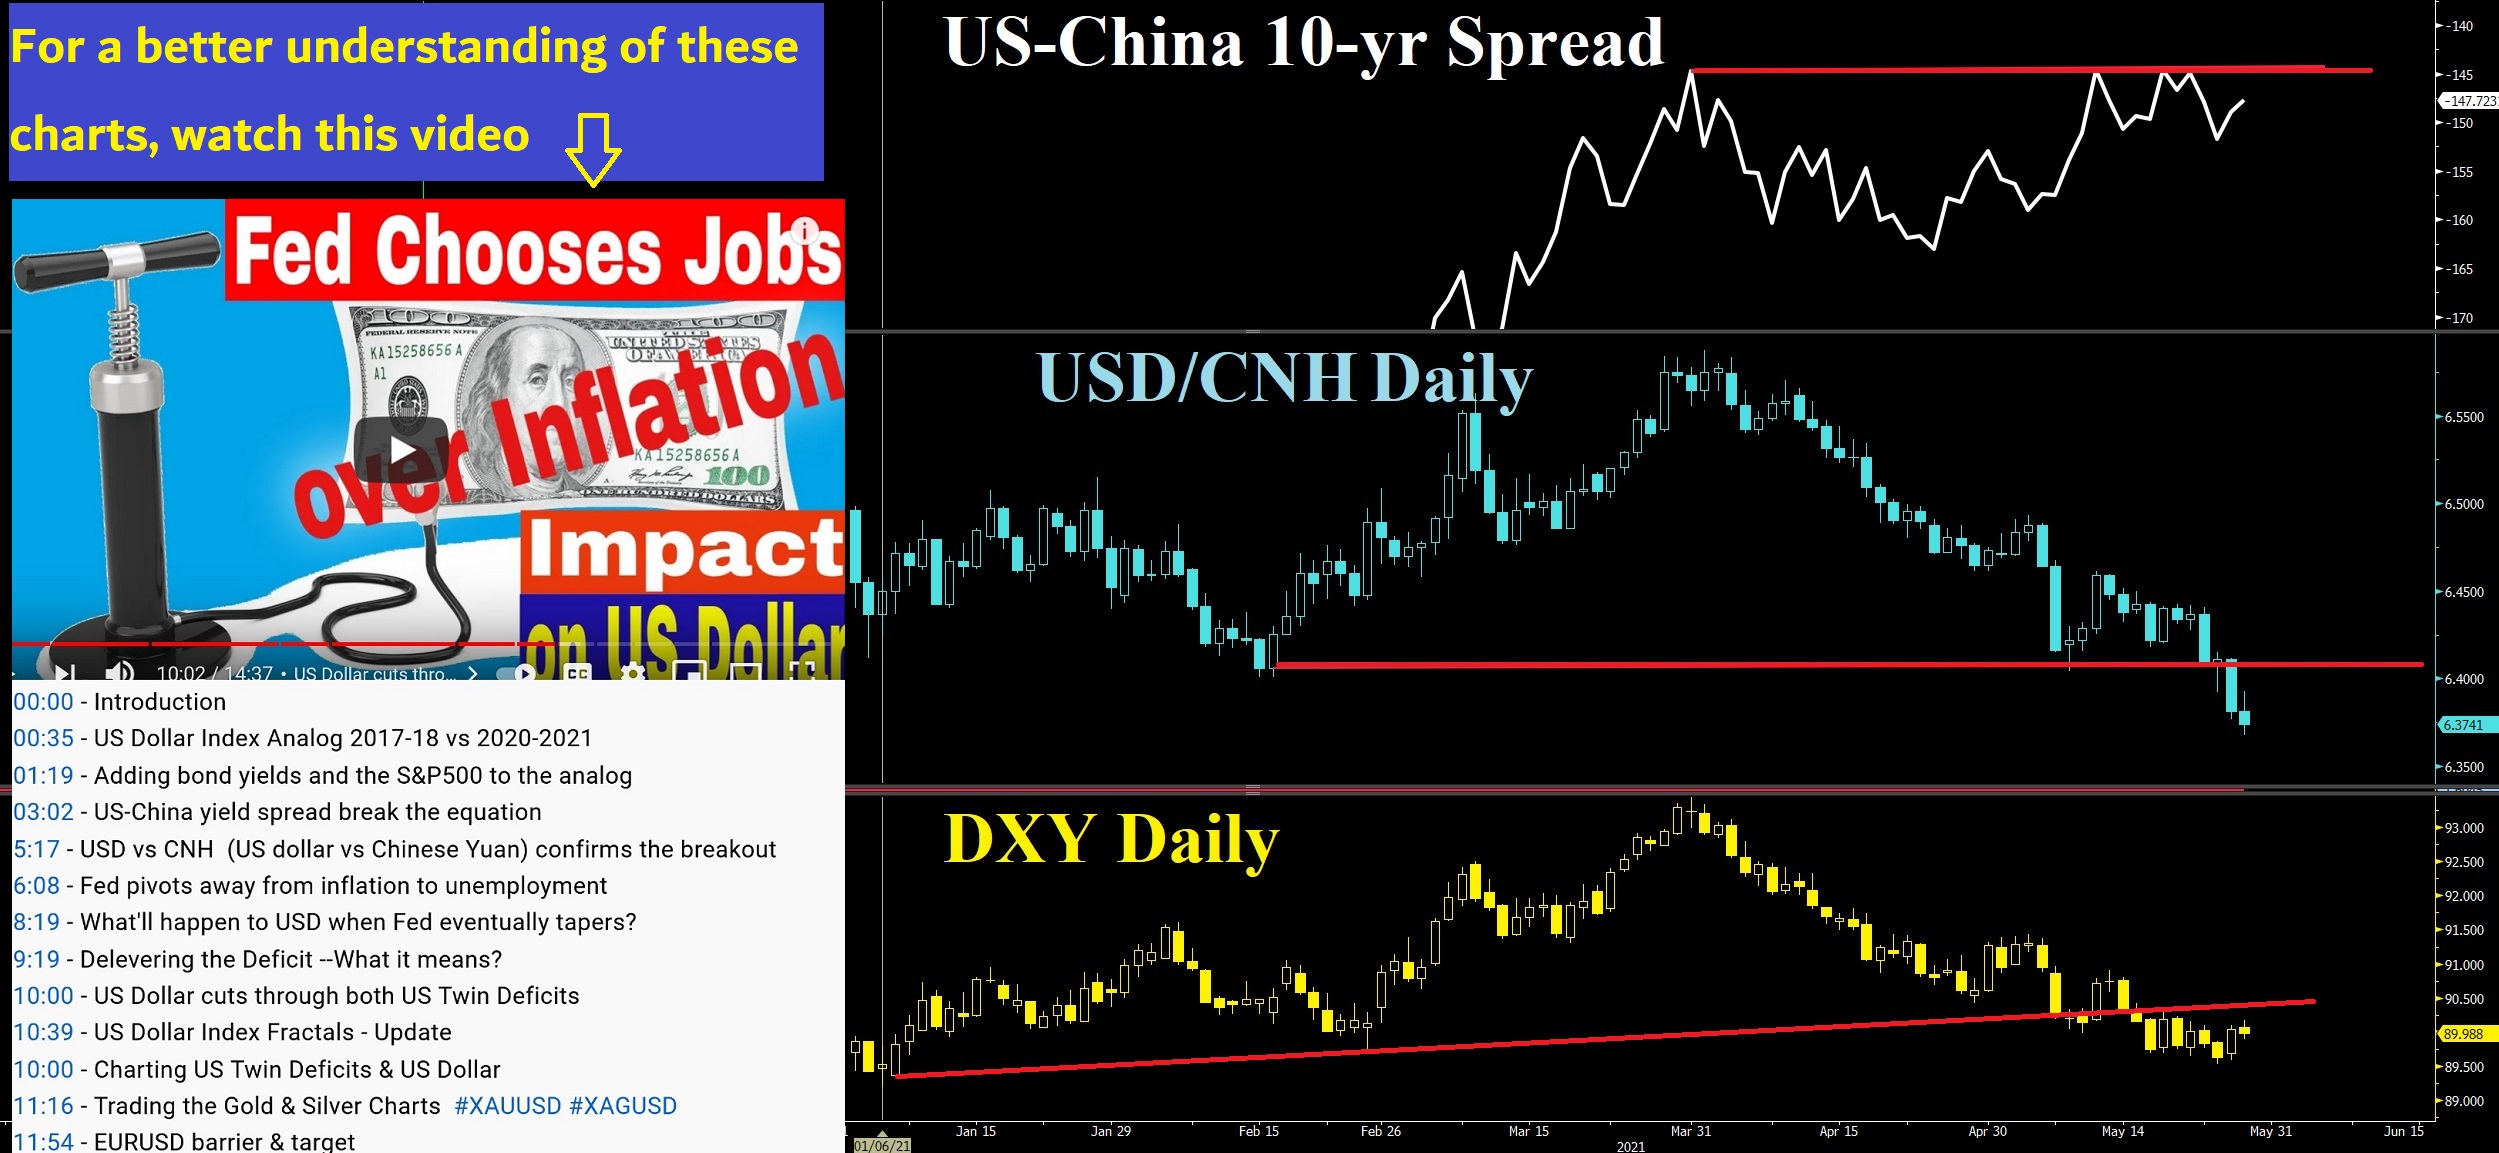 US-China 10 Yr Spread